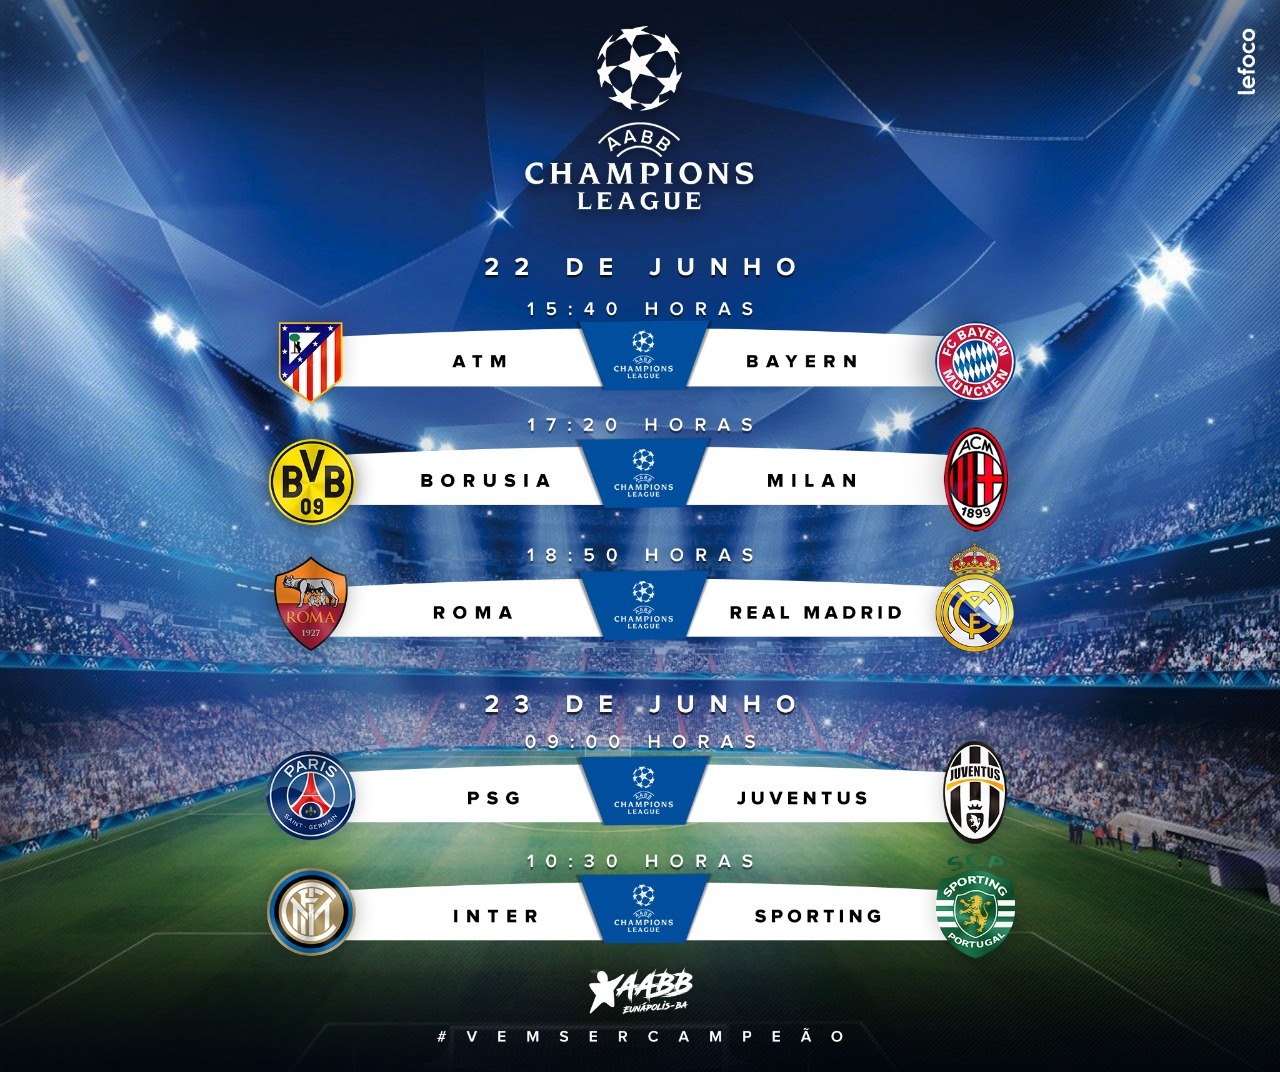 Segunda rodada da Champions League acontece neste sábado e domingo